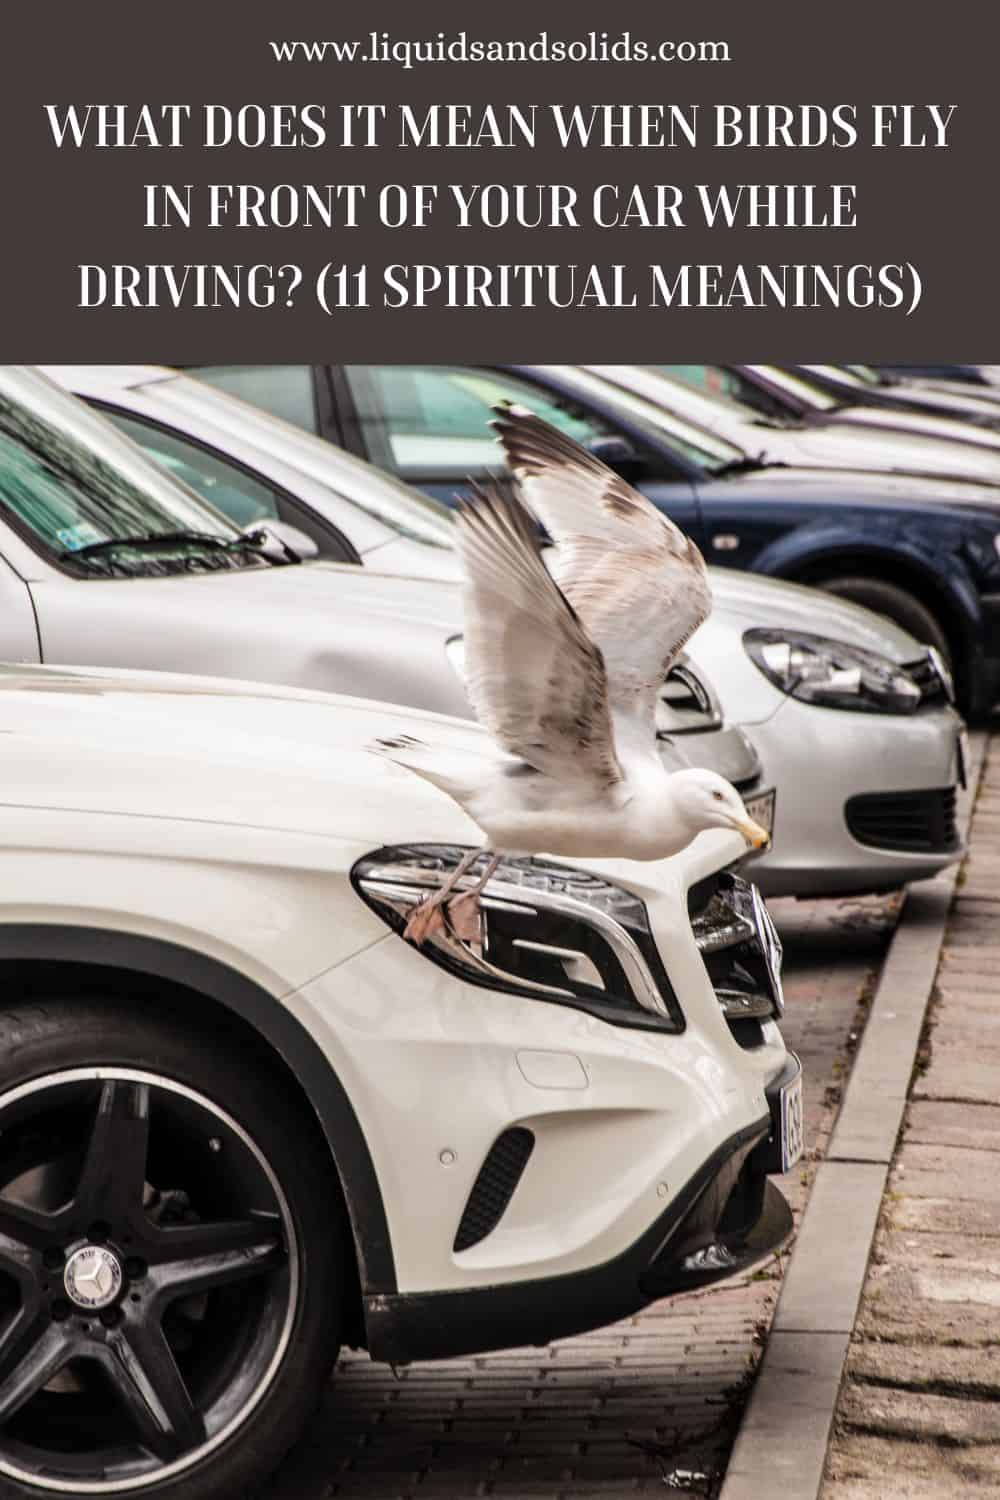  ماذا يعني تحليق الطيور أمام سيارتك أثناء القيادة؟ (11 معاني روحية)